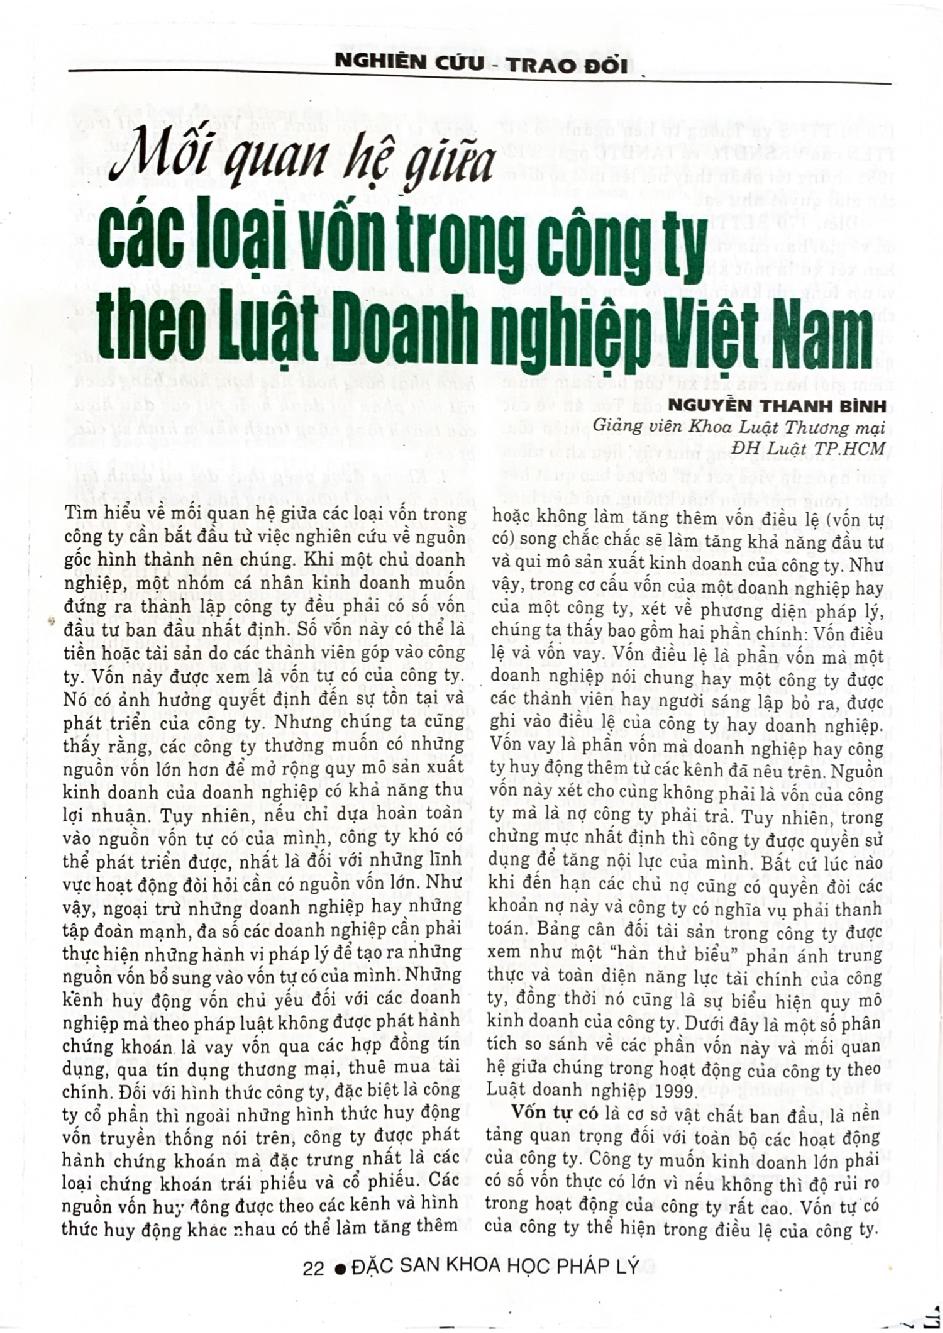 Mối quan hệ giữa các loại vốn trong công ty theo luật doanh nghiệp Việt Nam